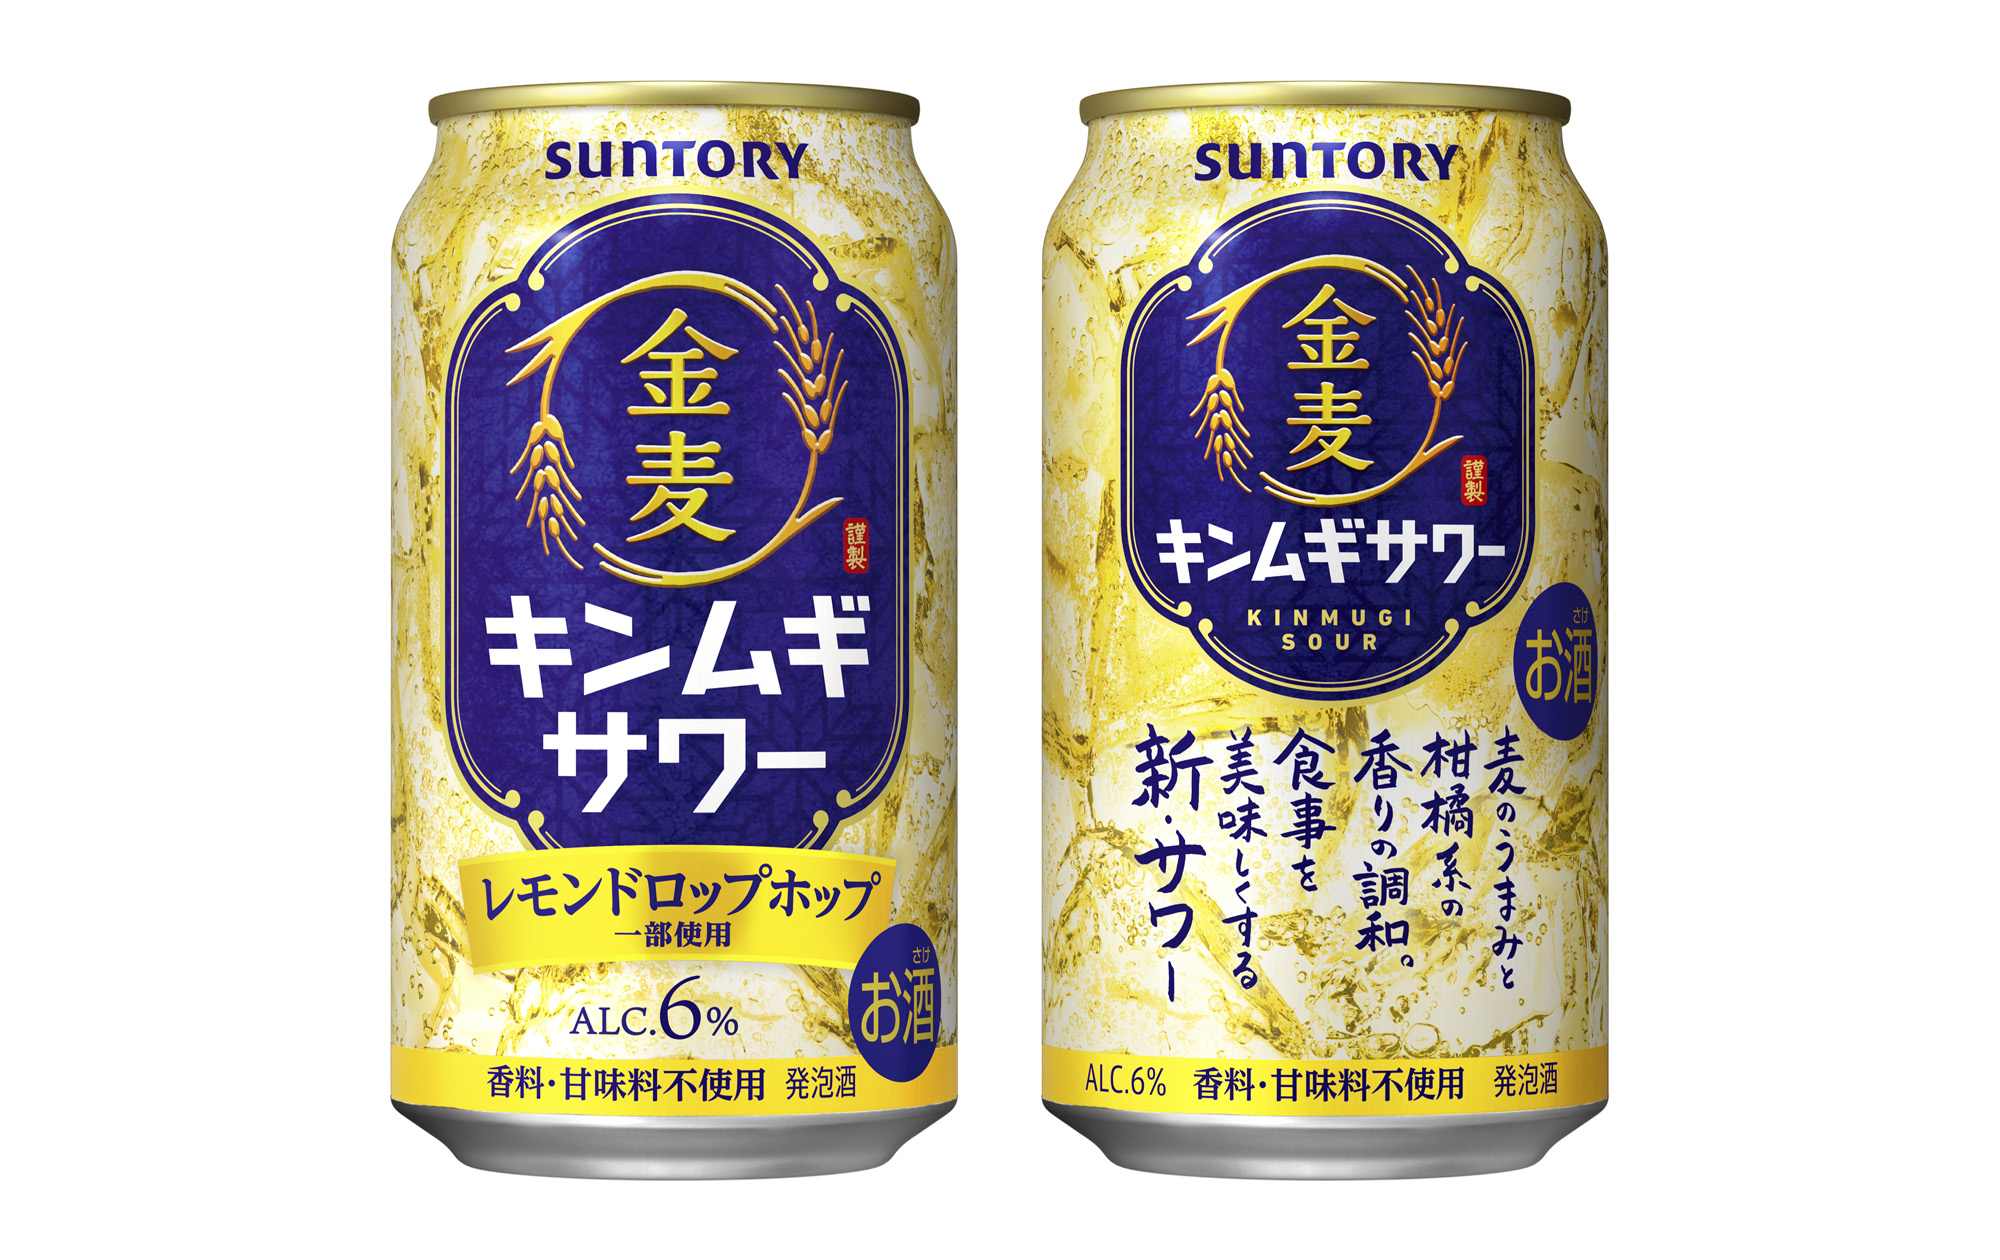 “サワー”の味わいをビールの醸造技術で実現「金麦サワー」北海道エリア期間限定新発売のサブ画像1